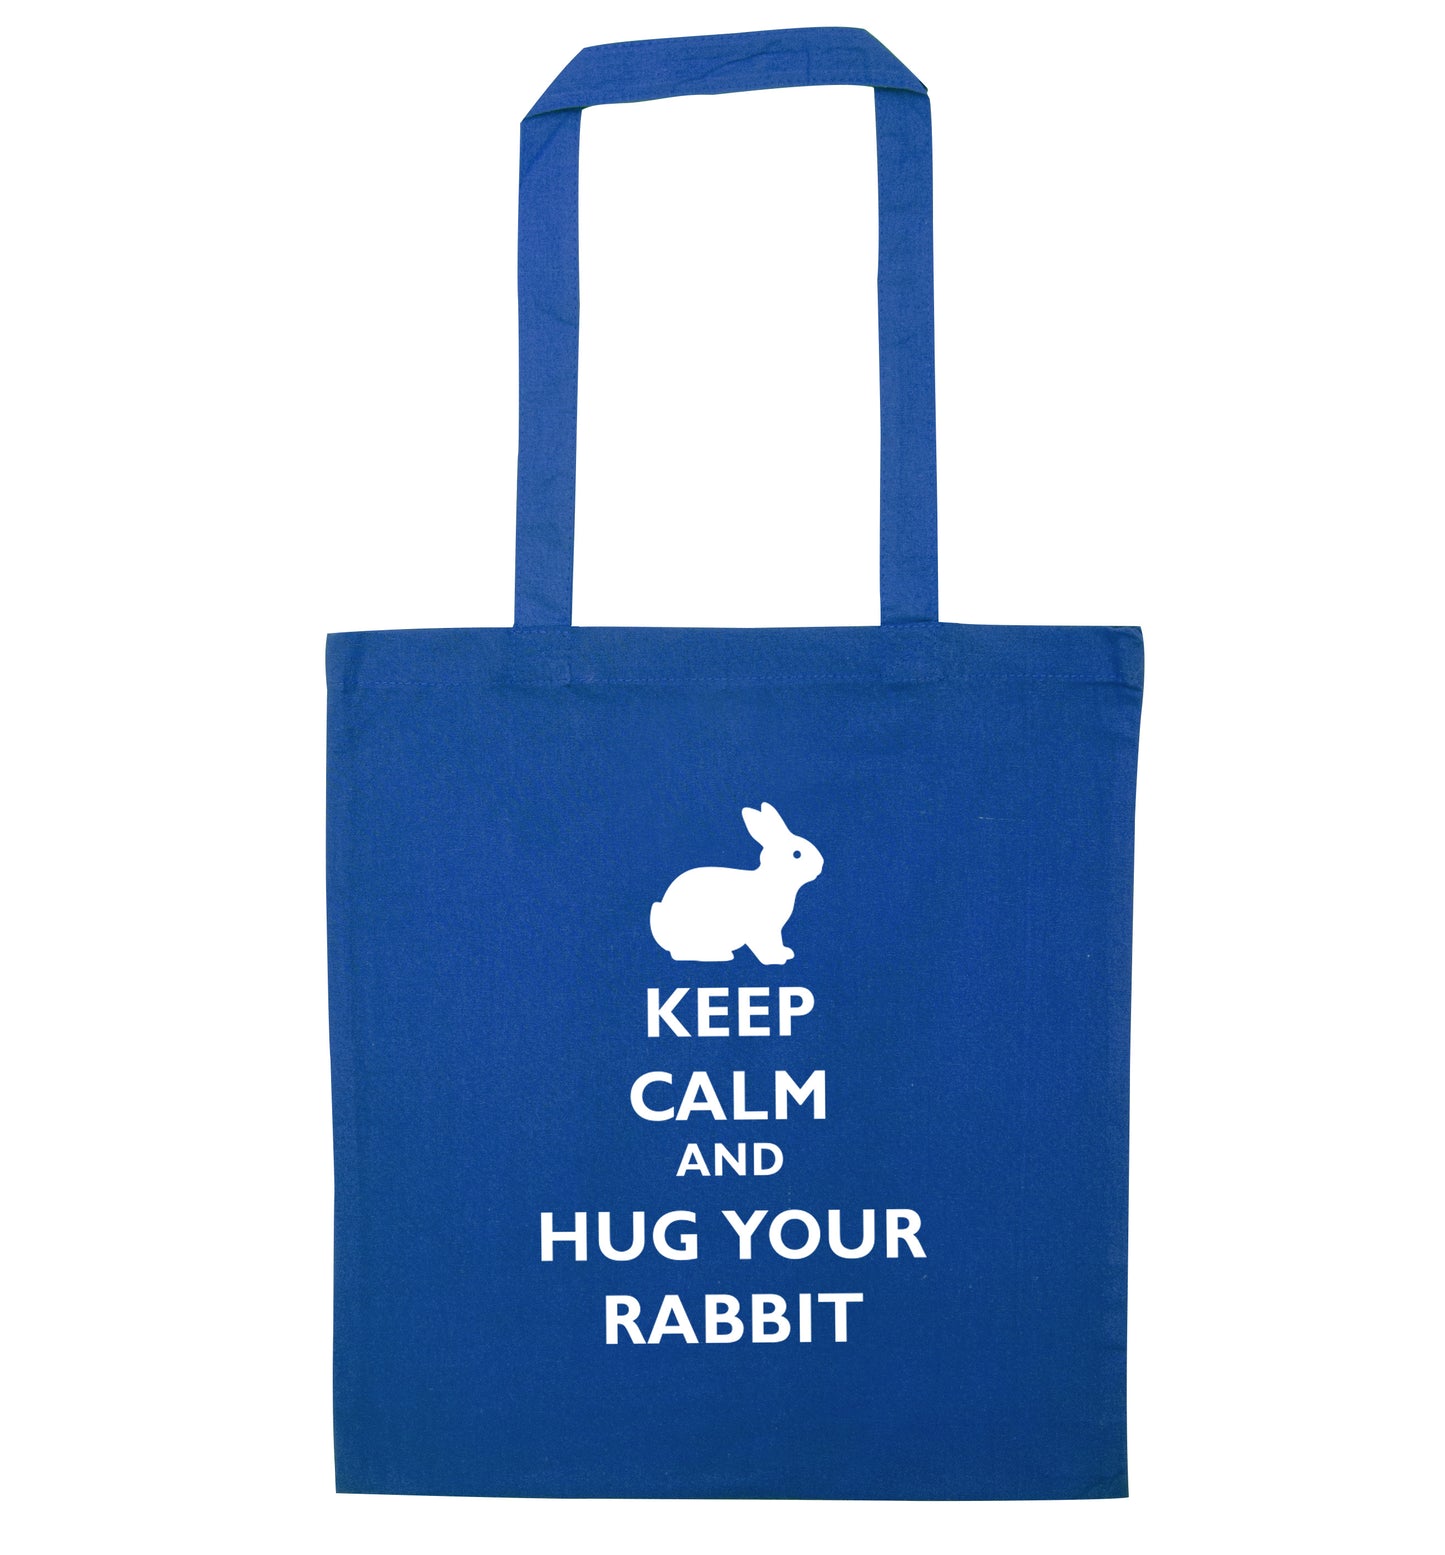 Keep calm and hug your rabbit blue tote bag